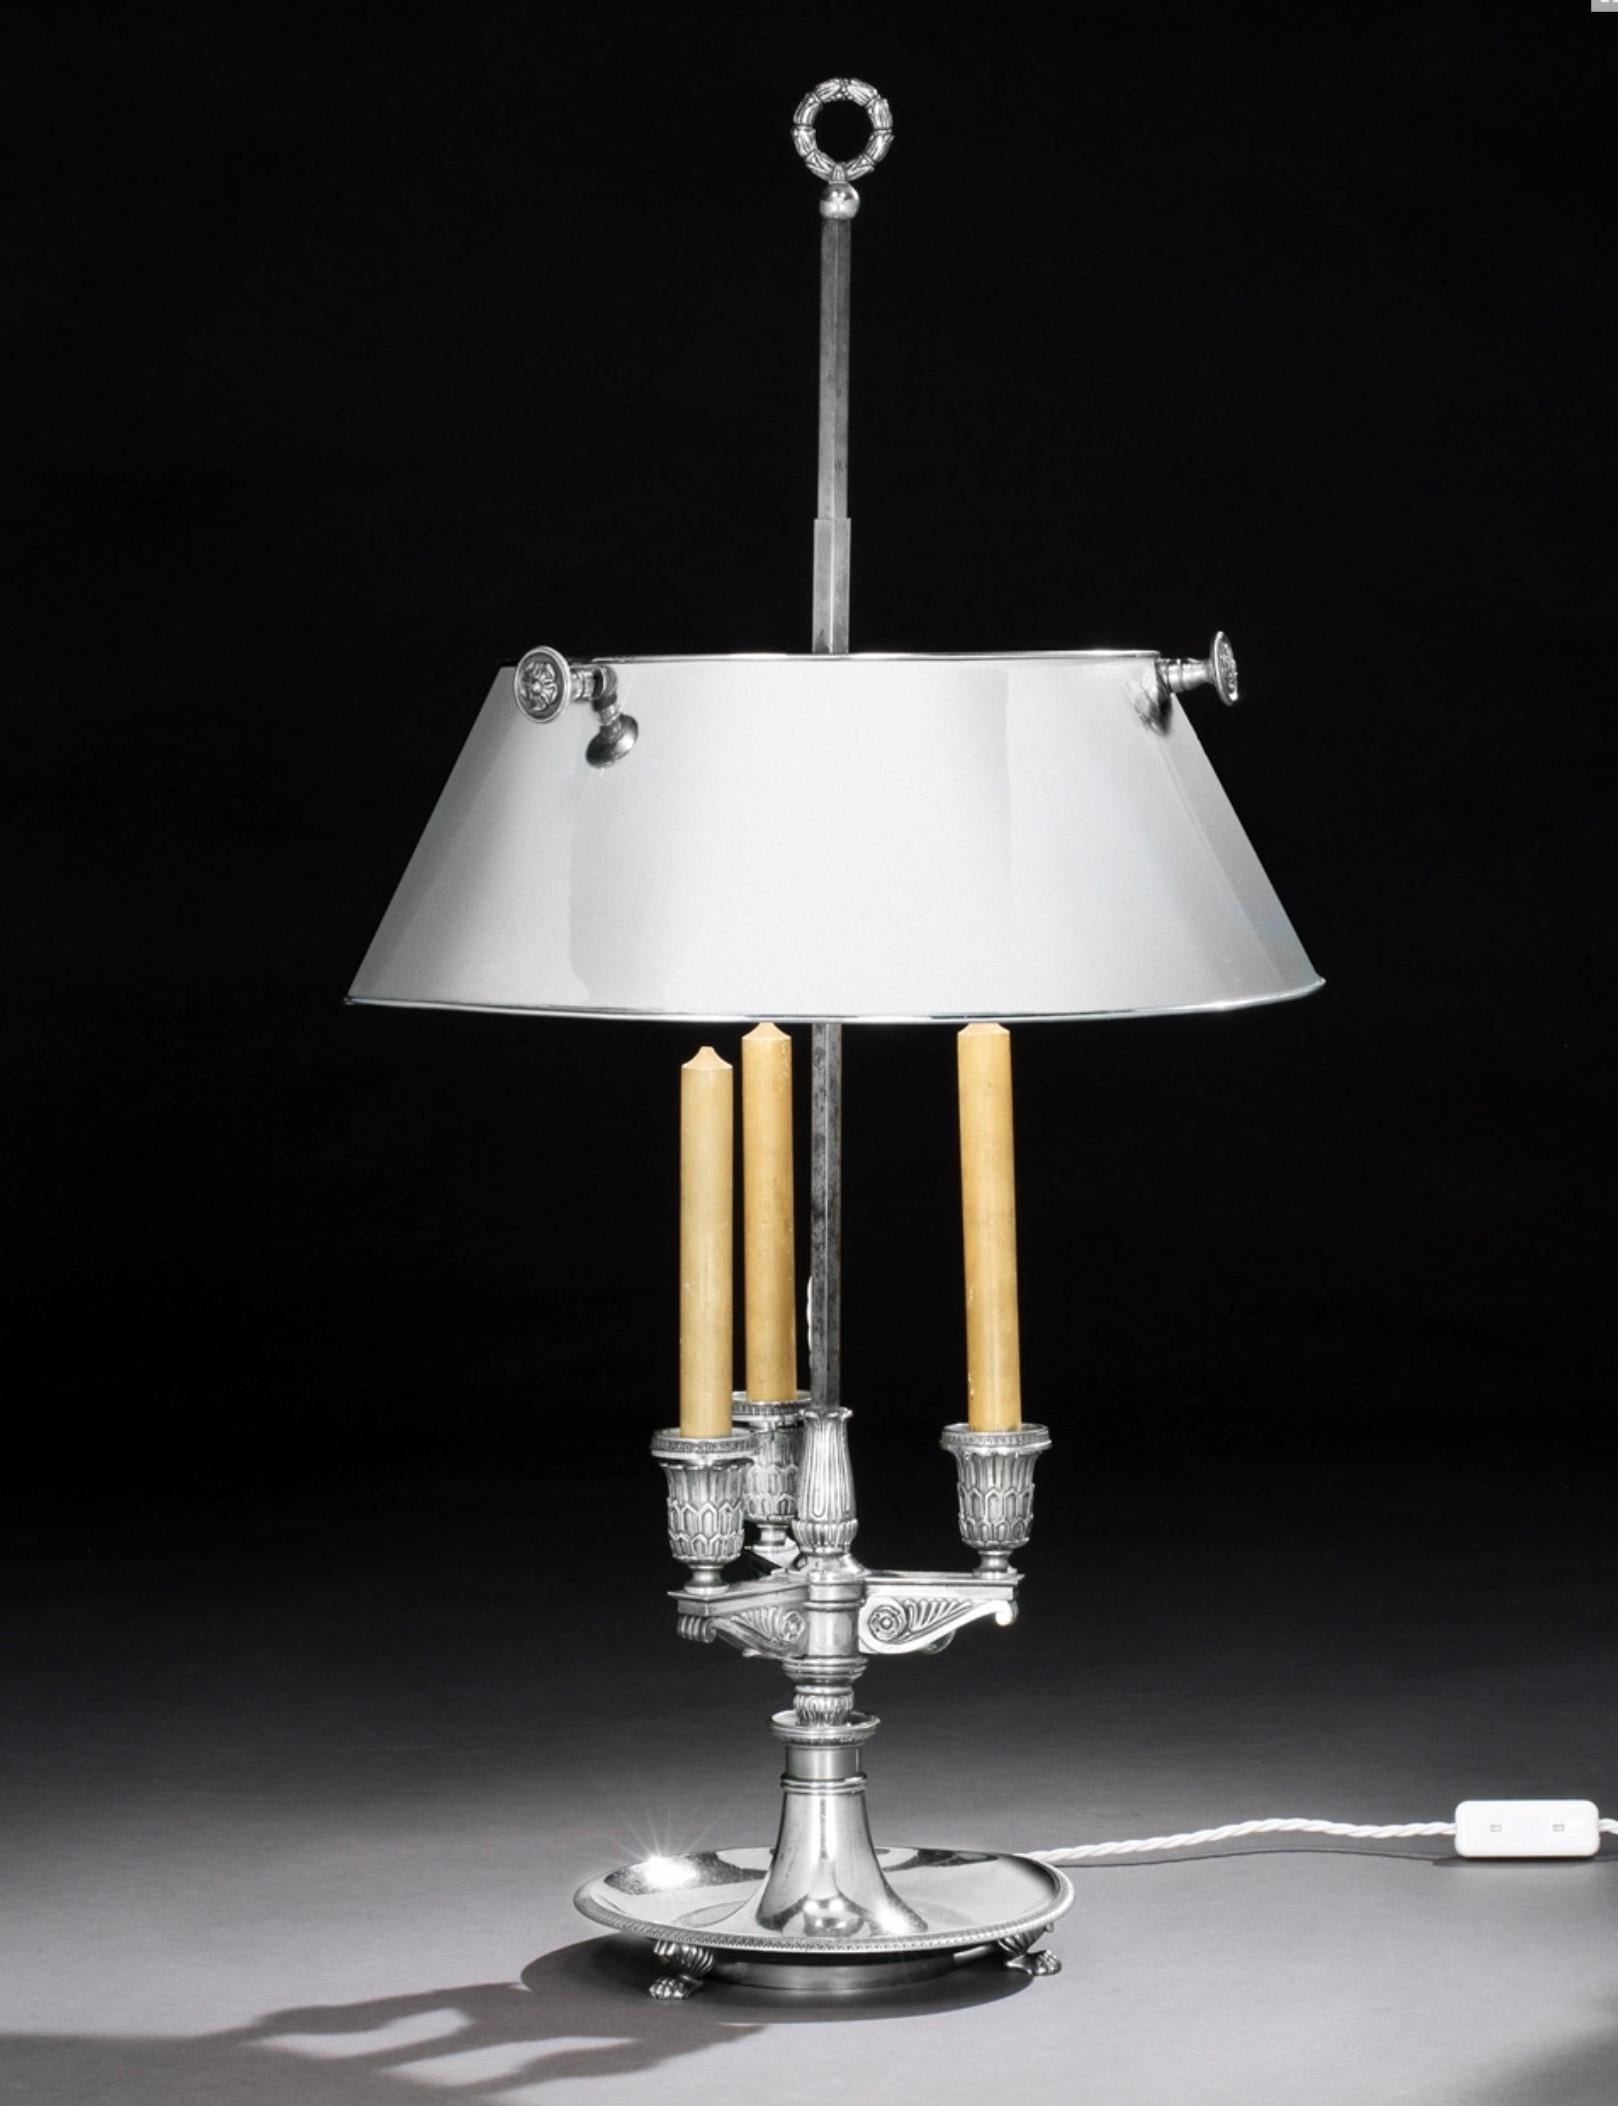 Eine feine französische Bouilottenlampe aus poliertem Stahl aus dem späten 19. Elektrisch verkabelt - die Glühbirnen sind im Lampenschirm versteckt.
Falsche Kerzen und besonders hochwertige Metallarbeiten. Der Schirm ist höhenverstellbar.